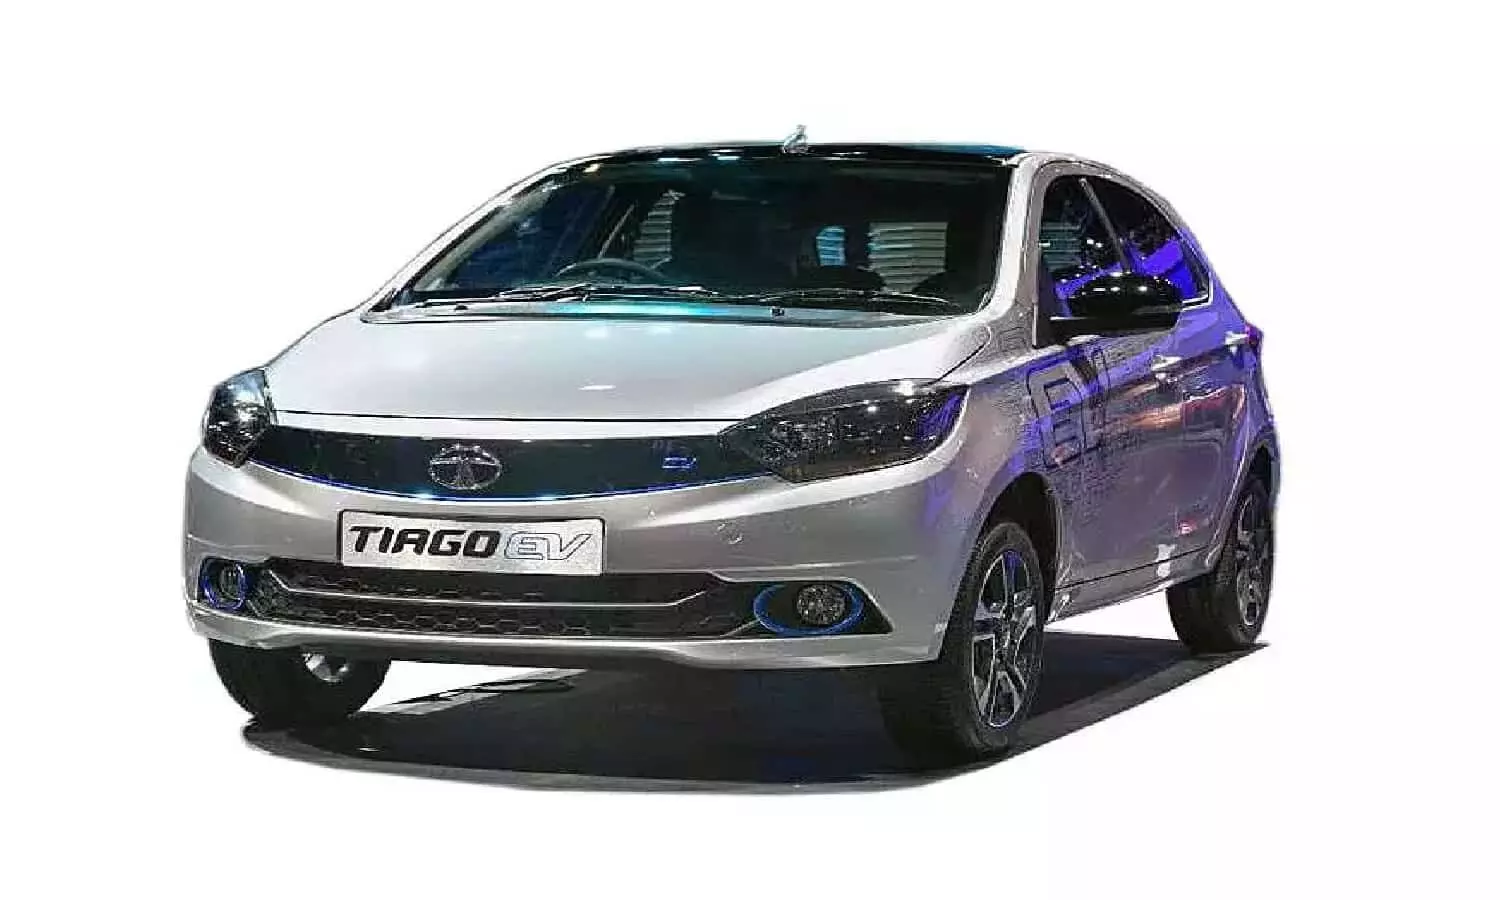 Tata Tiago EV 28 सितंबर को होगी लांच, सिंगल चार्ज में दौड़ेगी 400 किमी